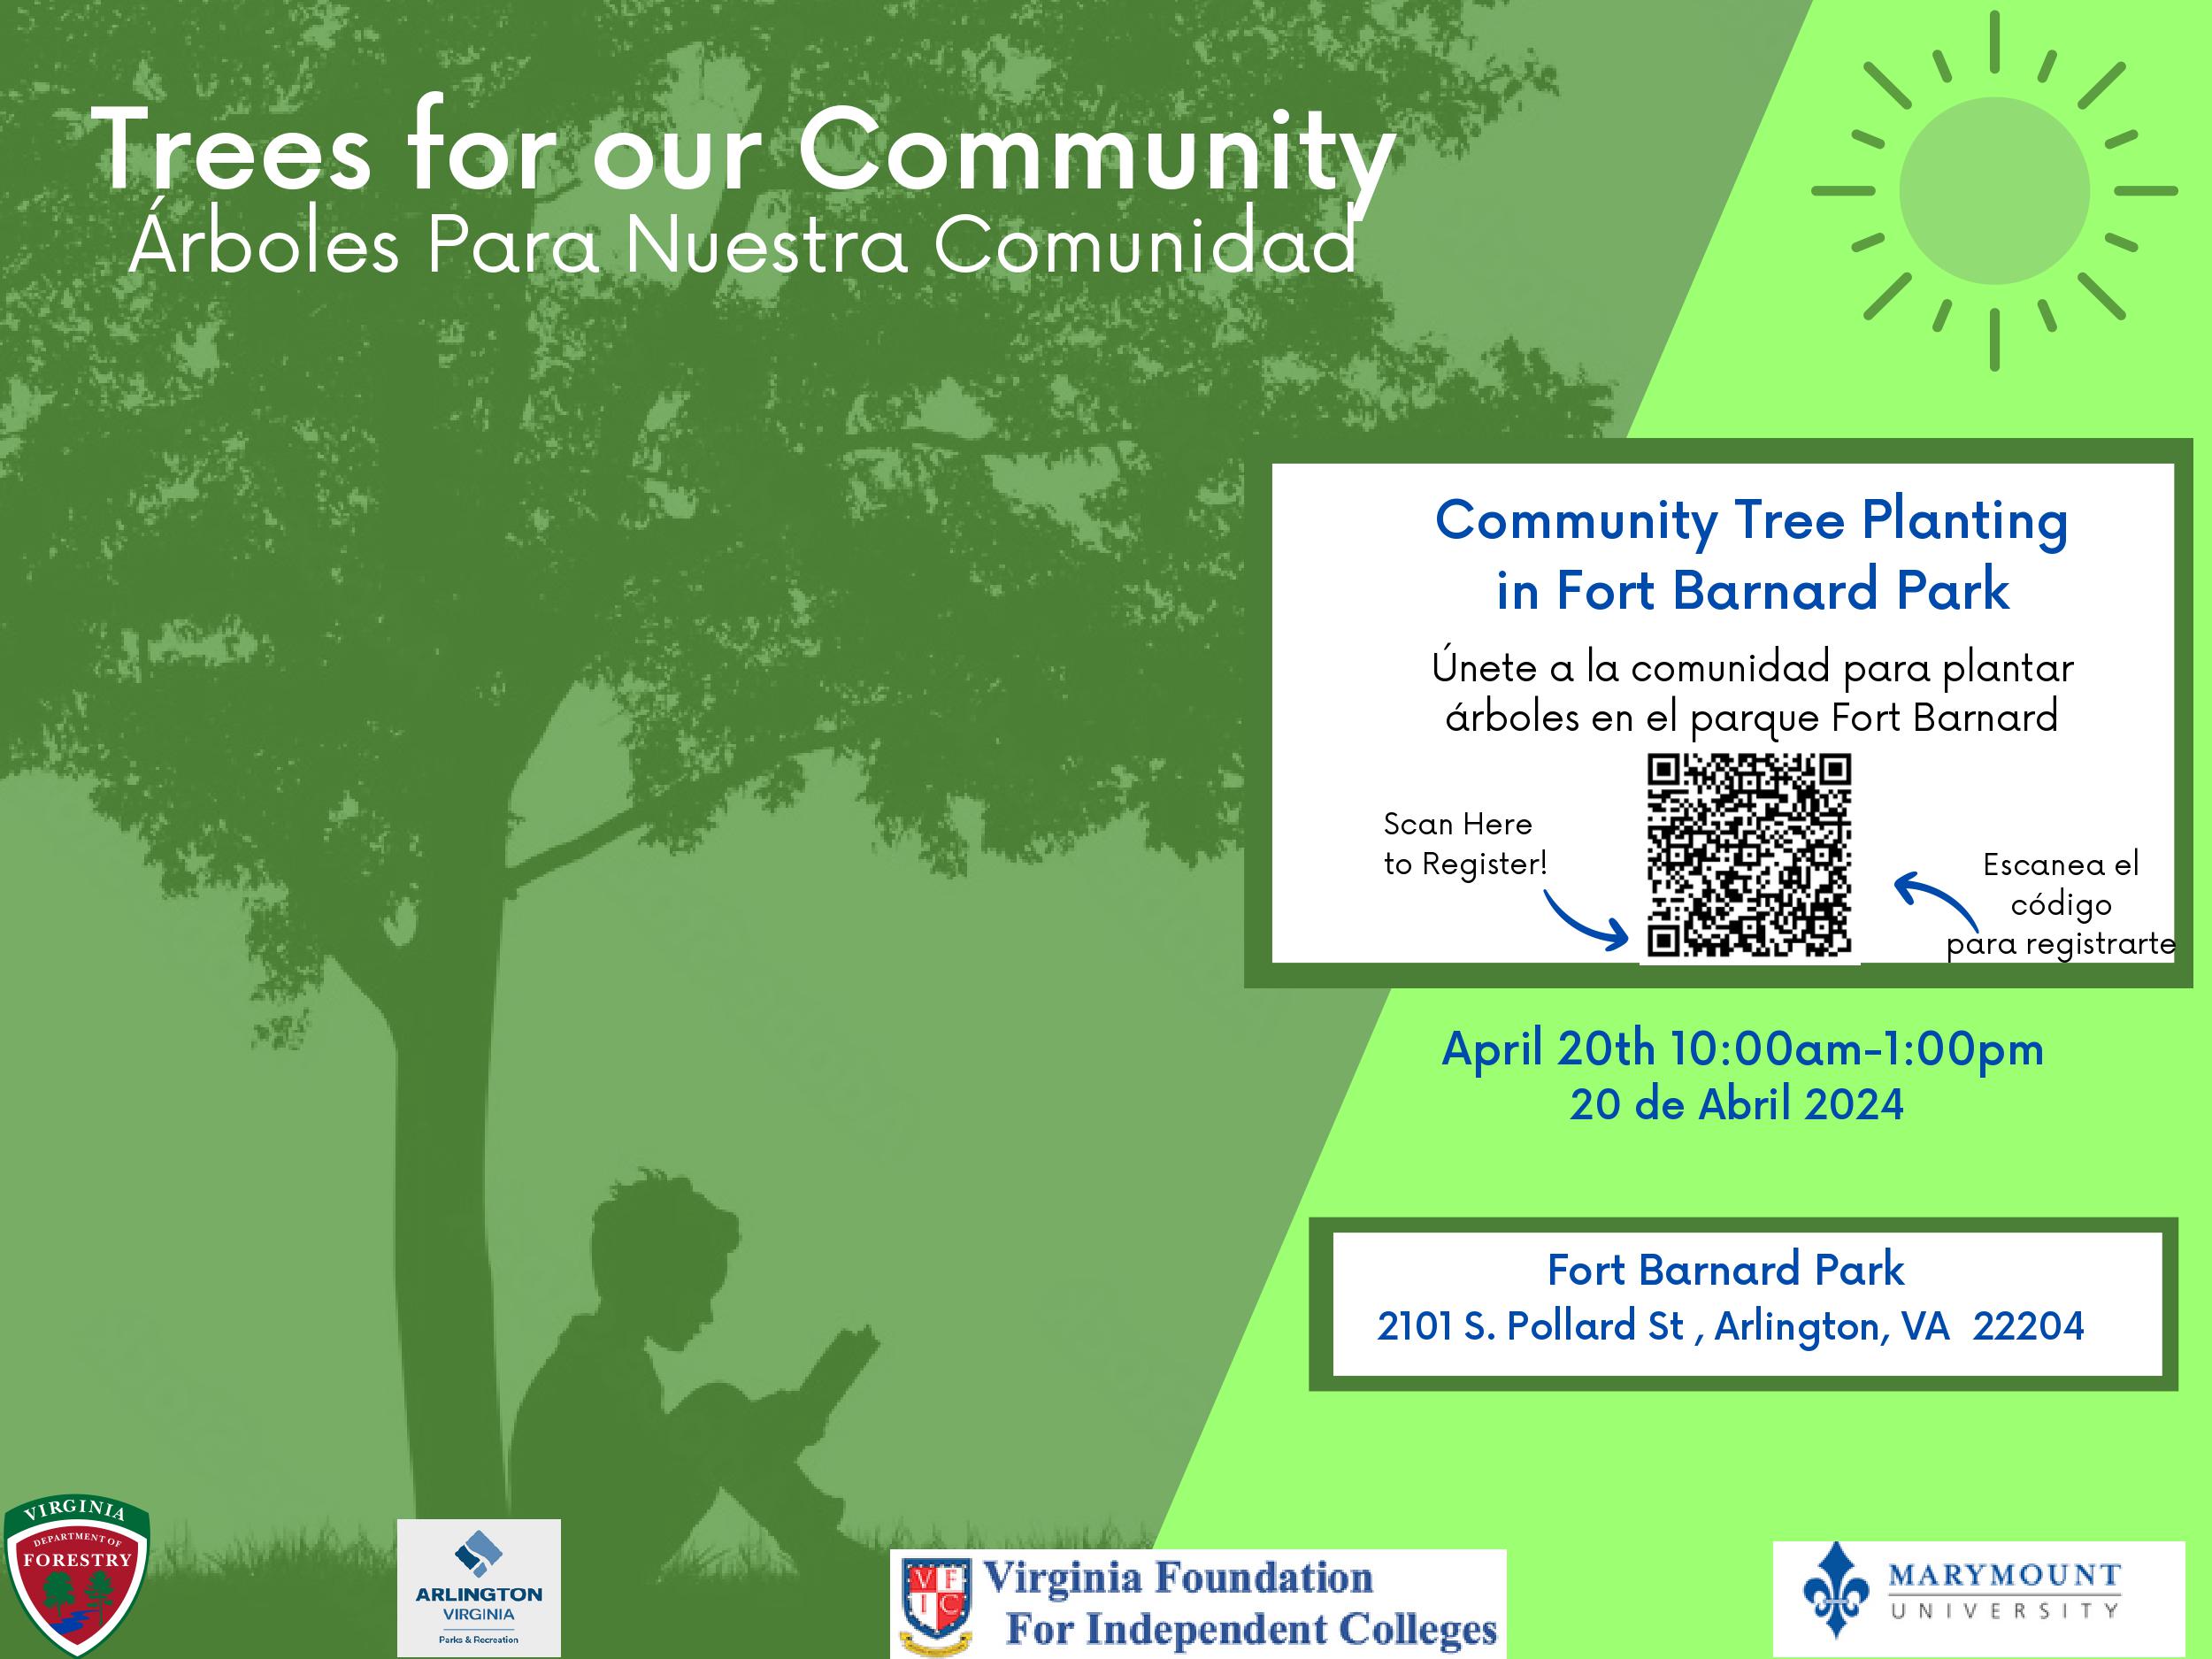 Community Tree Planting in Fort Barnard Park